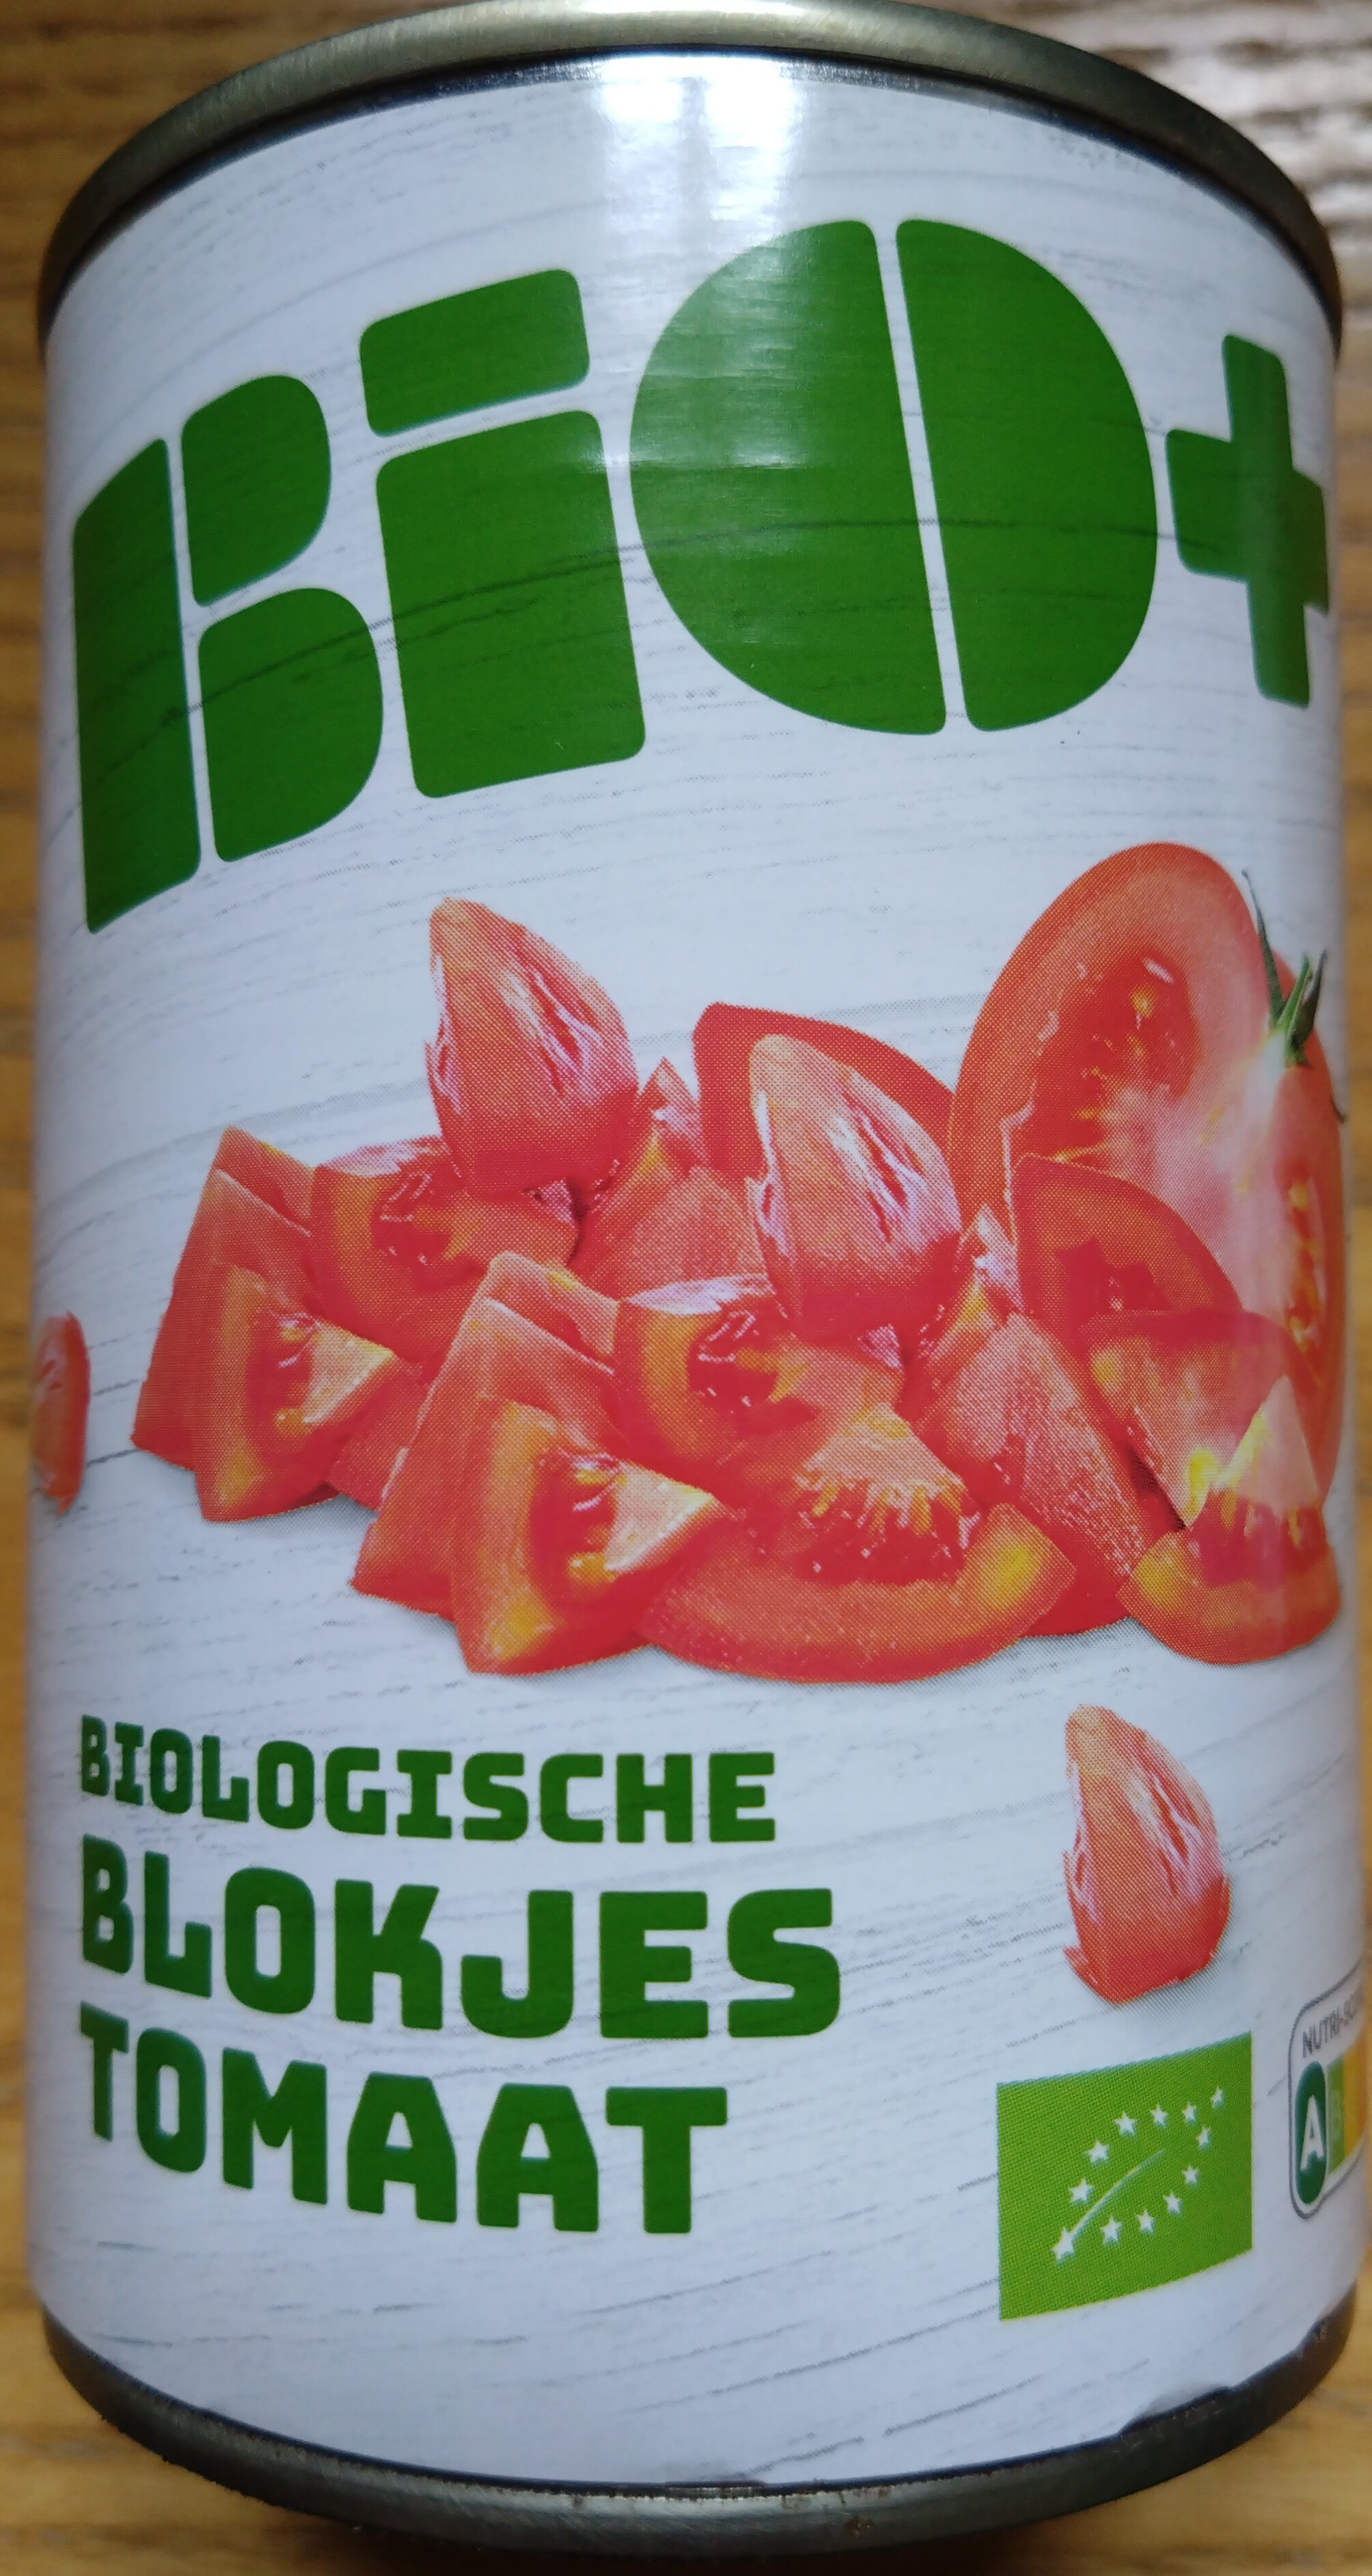 Bio+ biologische blokjes tomaat - Product